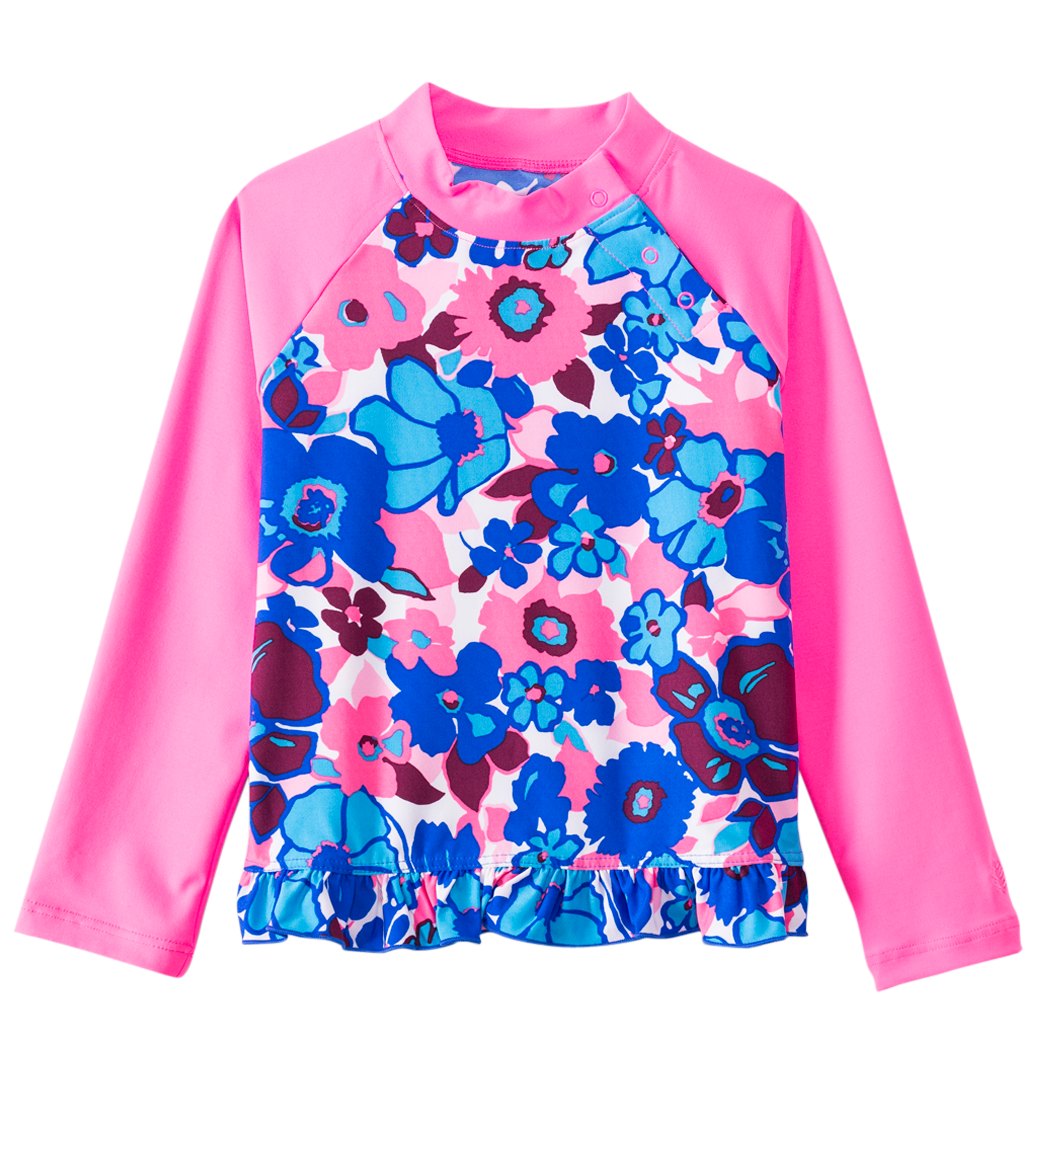 Coolibar Girls' Upf 50+ Ruffle Swim Shirt 6 Months-3T - Blue Summer Bloom 18-24 Months Polyester/Spandex - Swimoutlet.com